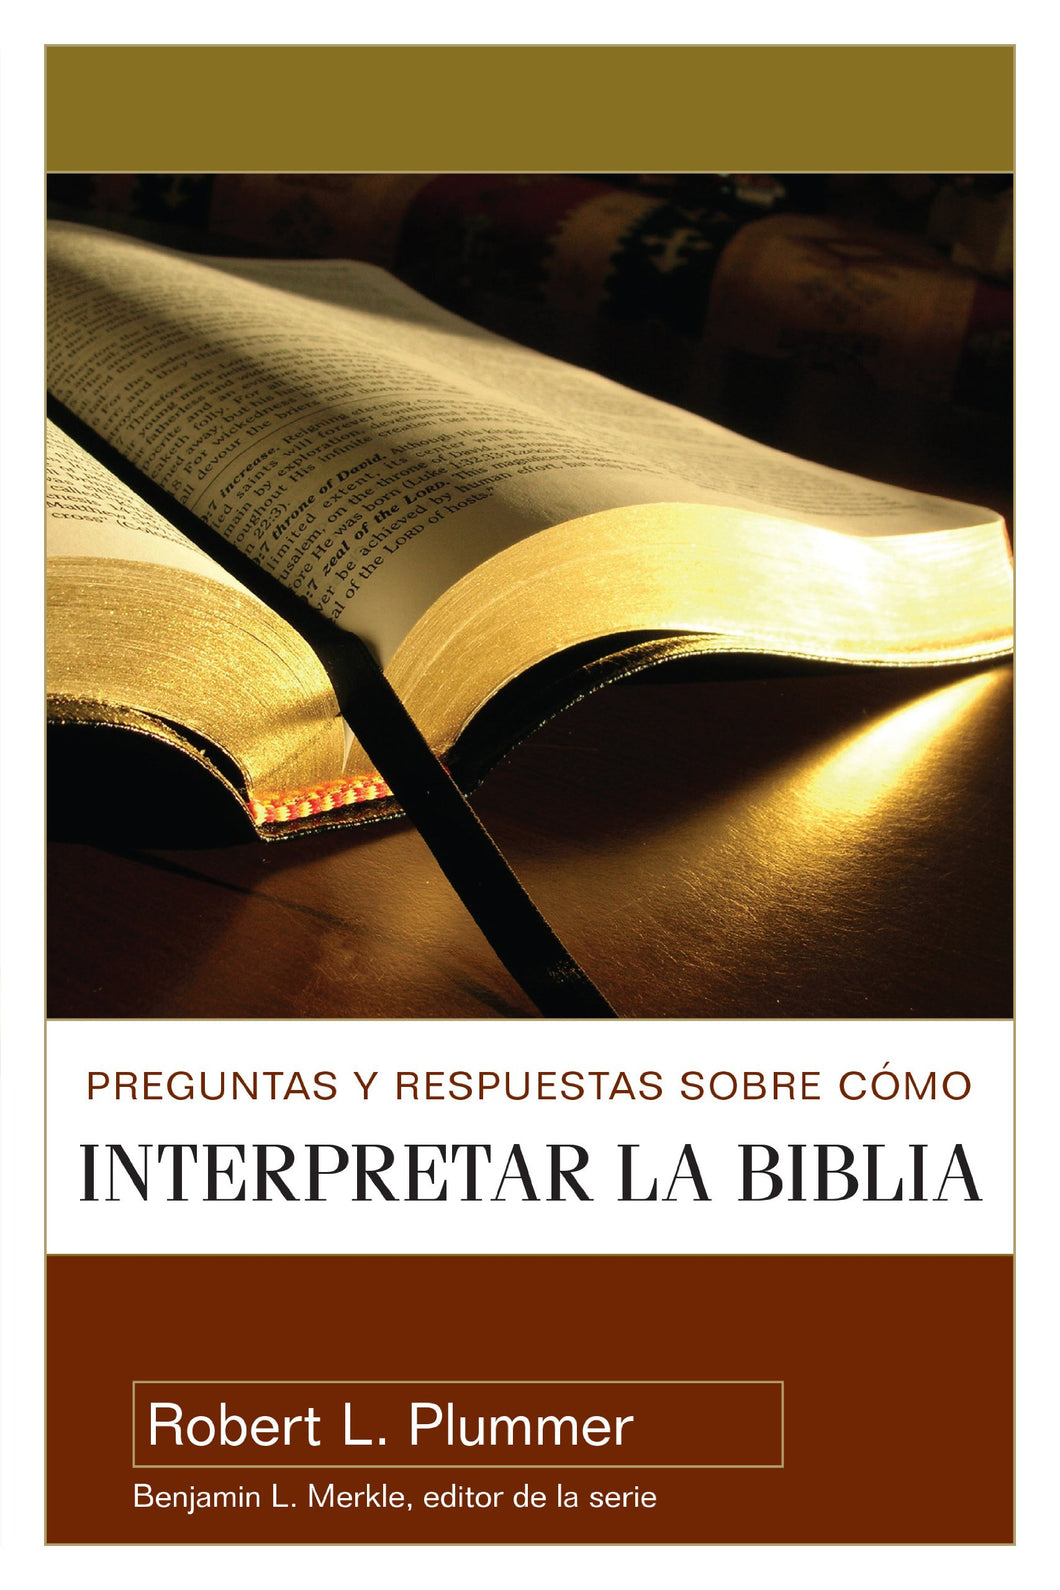 PREGUNTAS Y RESPUESTAS SOBRE CÓMO INTERPRETAR LA BIBLIA